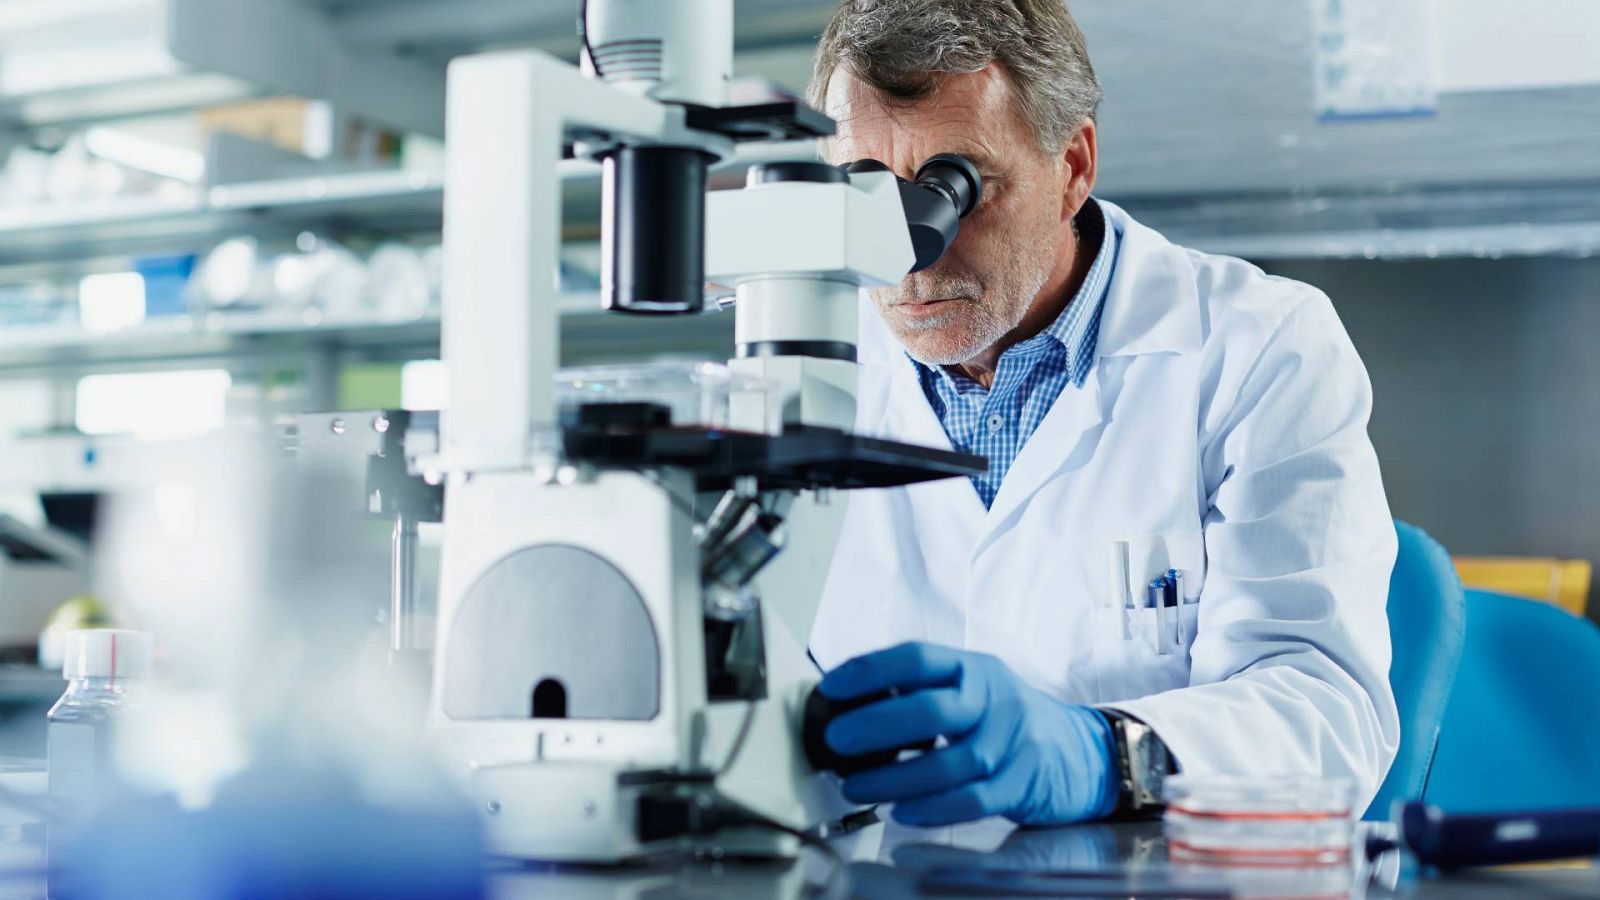 El cromosoma Y hace a los hombres más vulnerables al cáncer: Un investigador utiliza un microscopio